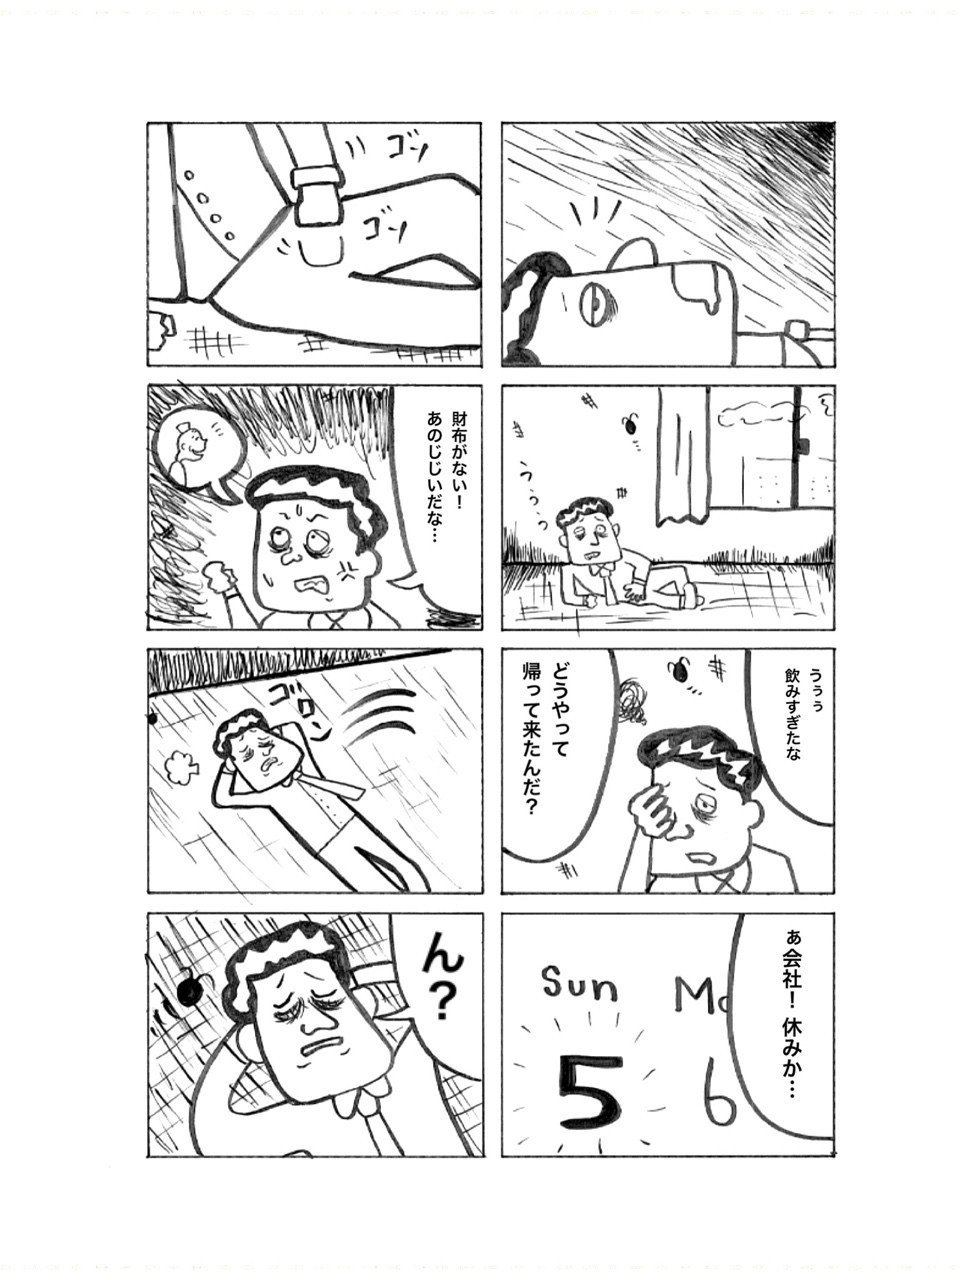 餃子物語vol 4 中山少年 Note